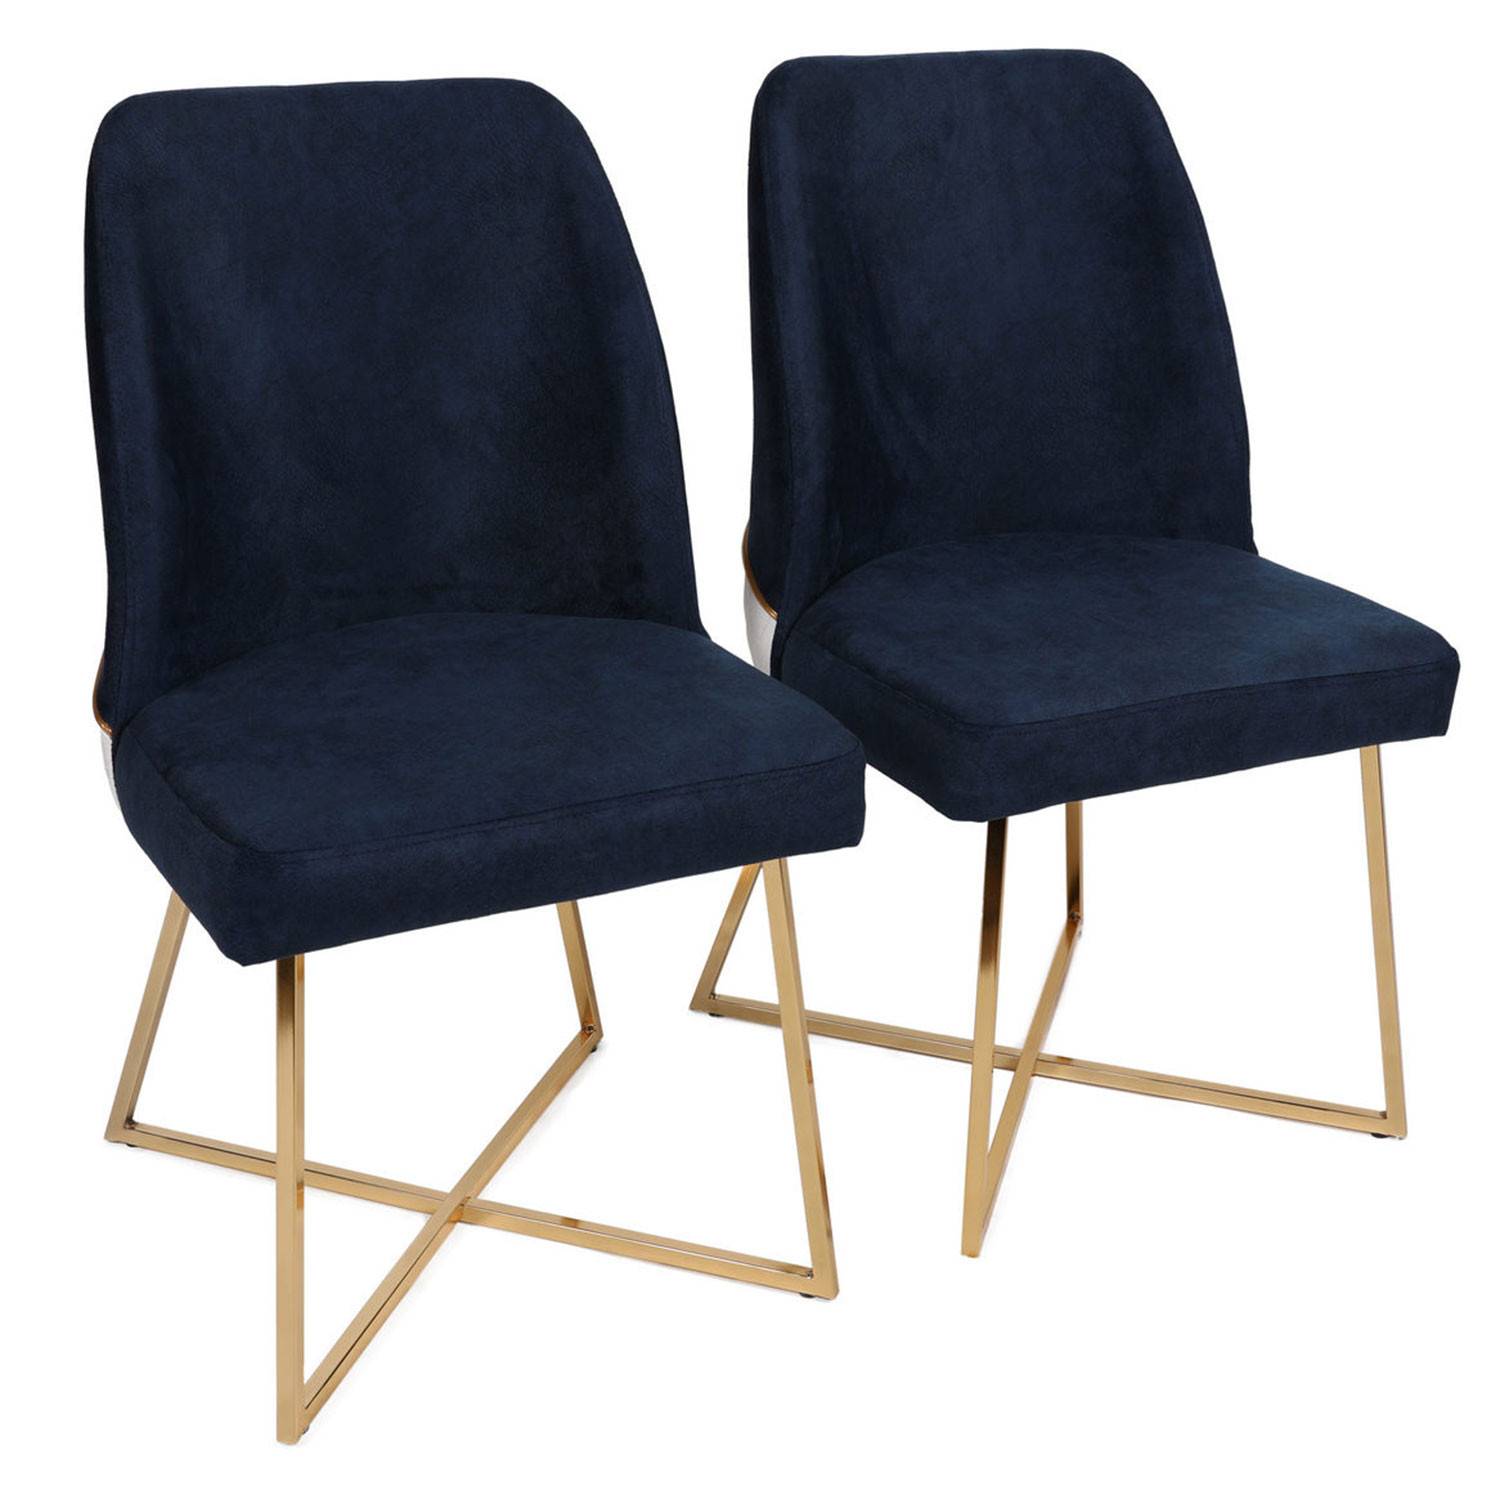 Juego de 2 sillas de diseño Kymish Metal dorado y terciopelo azul oscuro